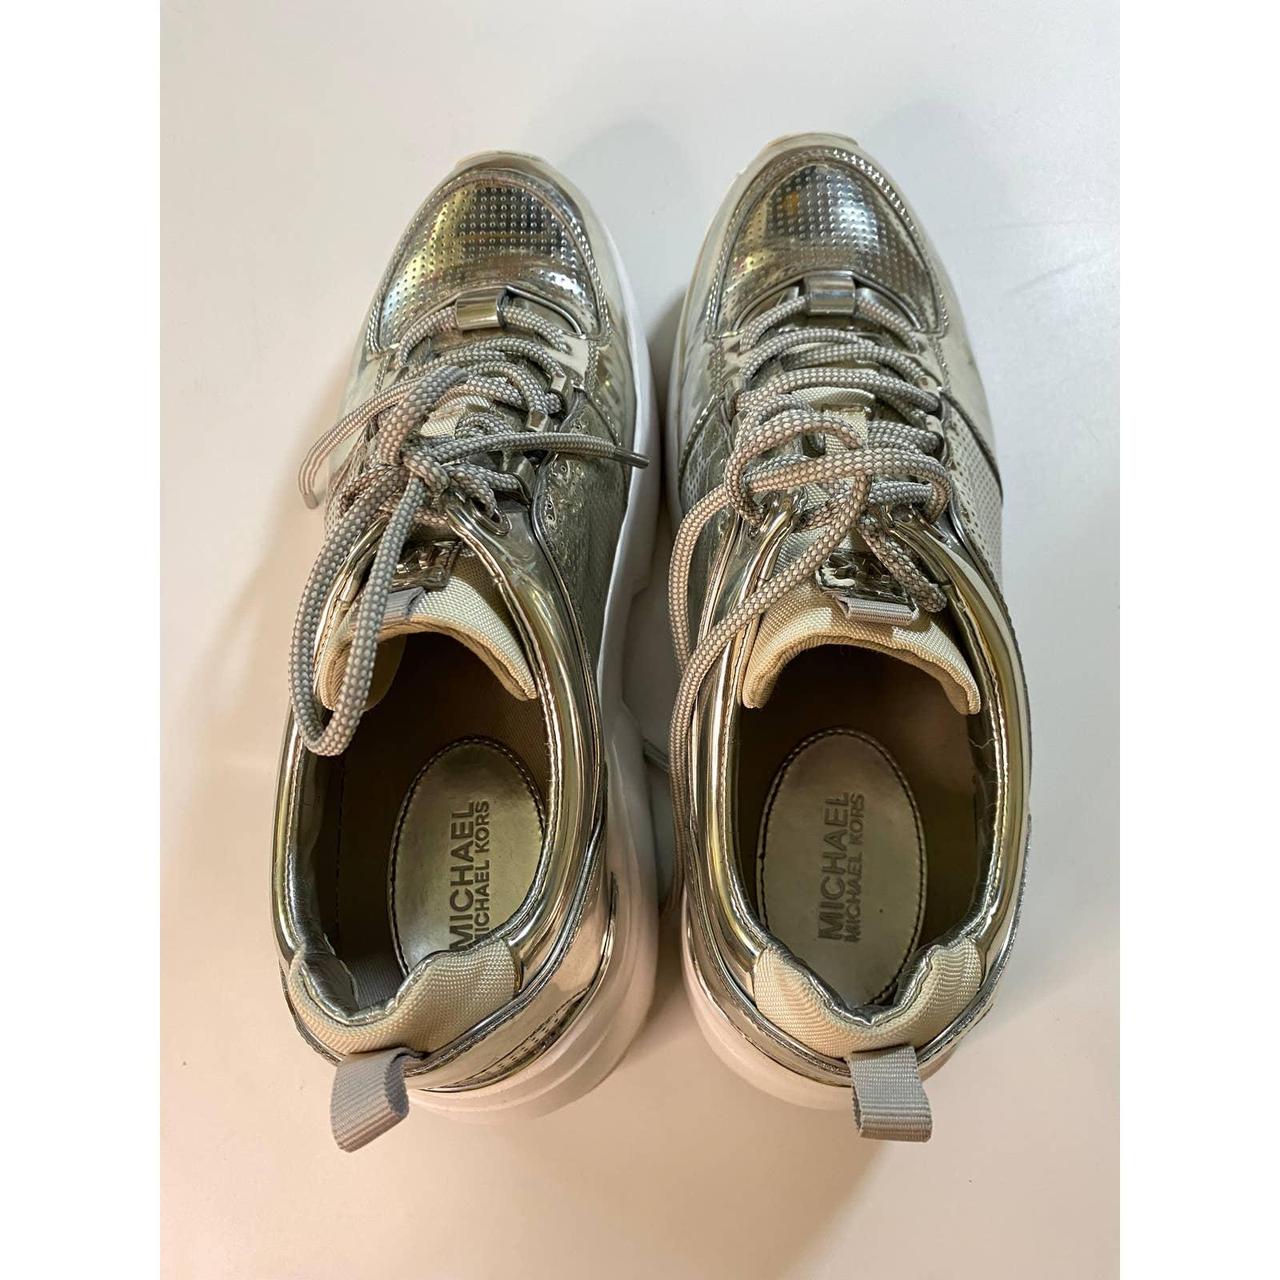 Silver sneakers by Michael Kors. MK sneakers, all... - Depop